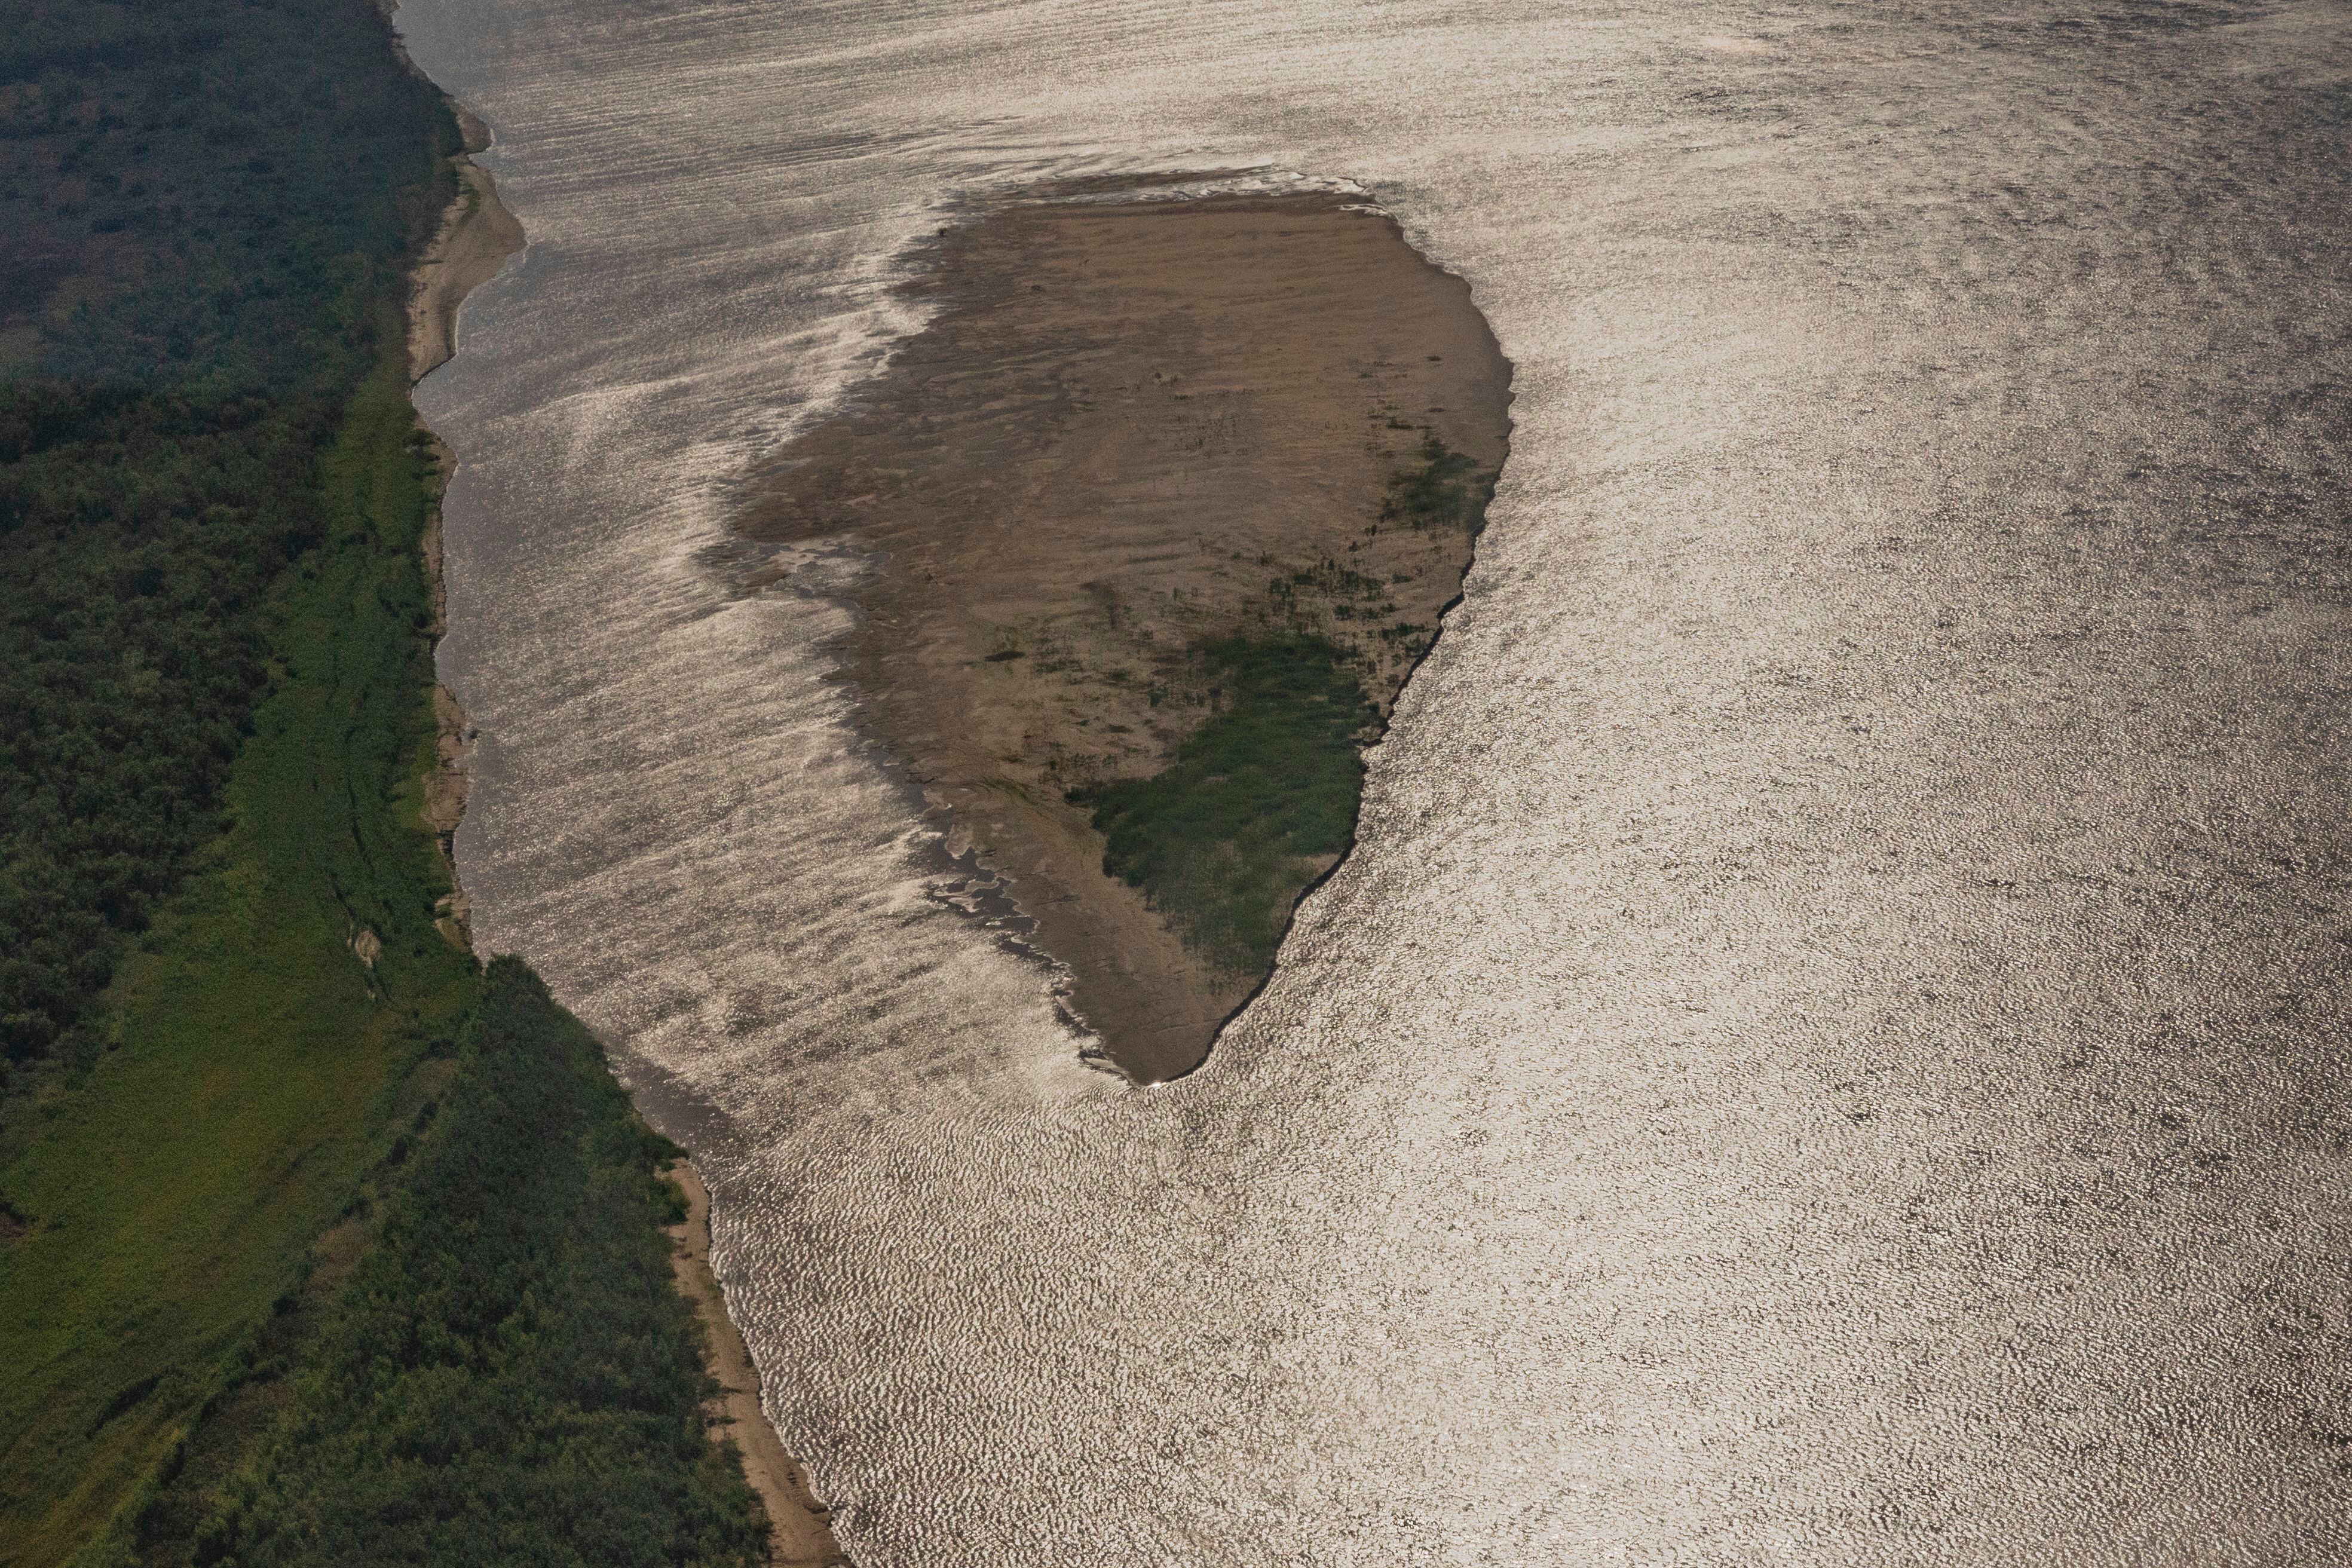 Uma ilha surge na superfície diante da seca no delta do Paraná; uma importante zona úmida de 17.500 km2 nas províncias argentinas de Entre Ríos, Santa Fé e Buenos Aires.